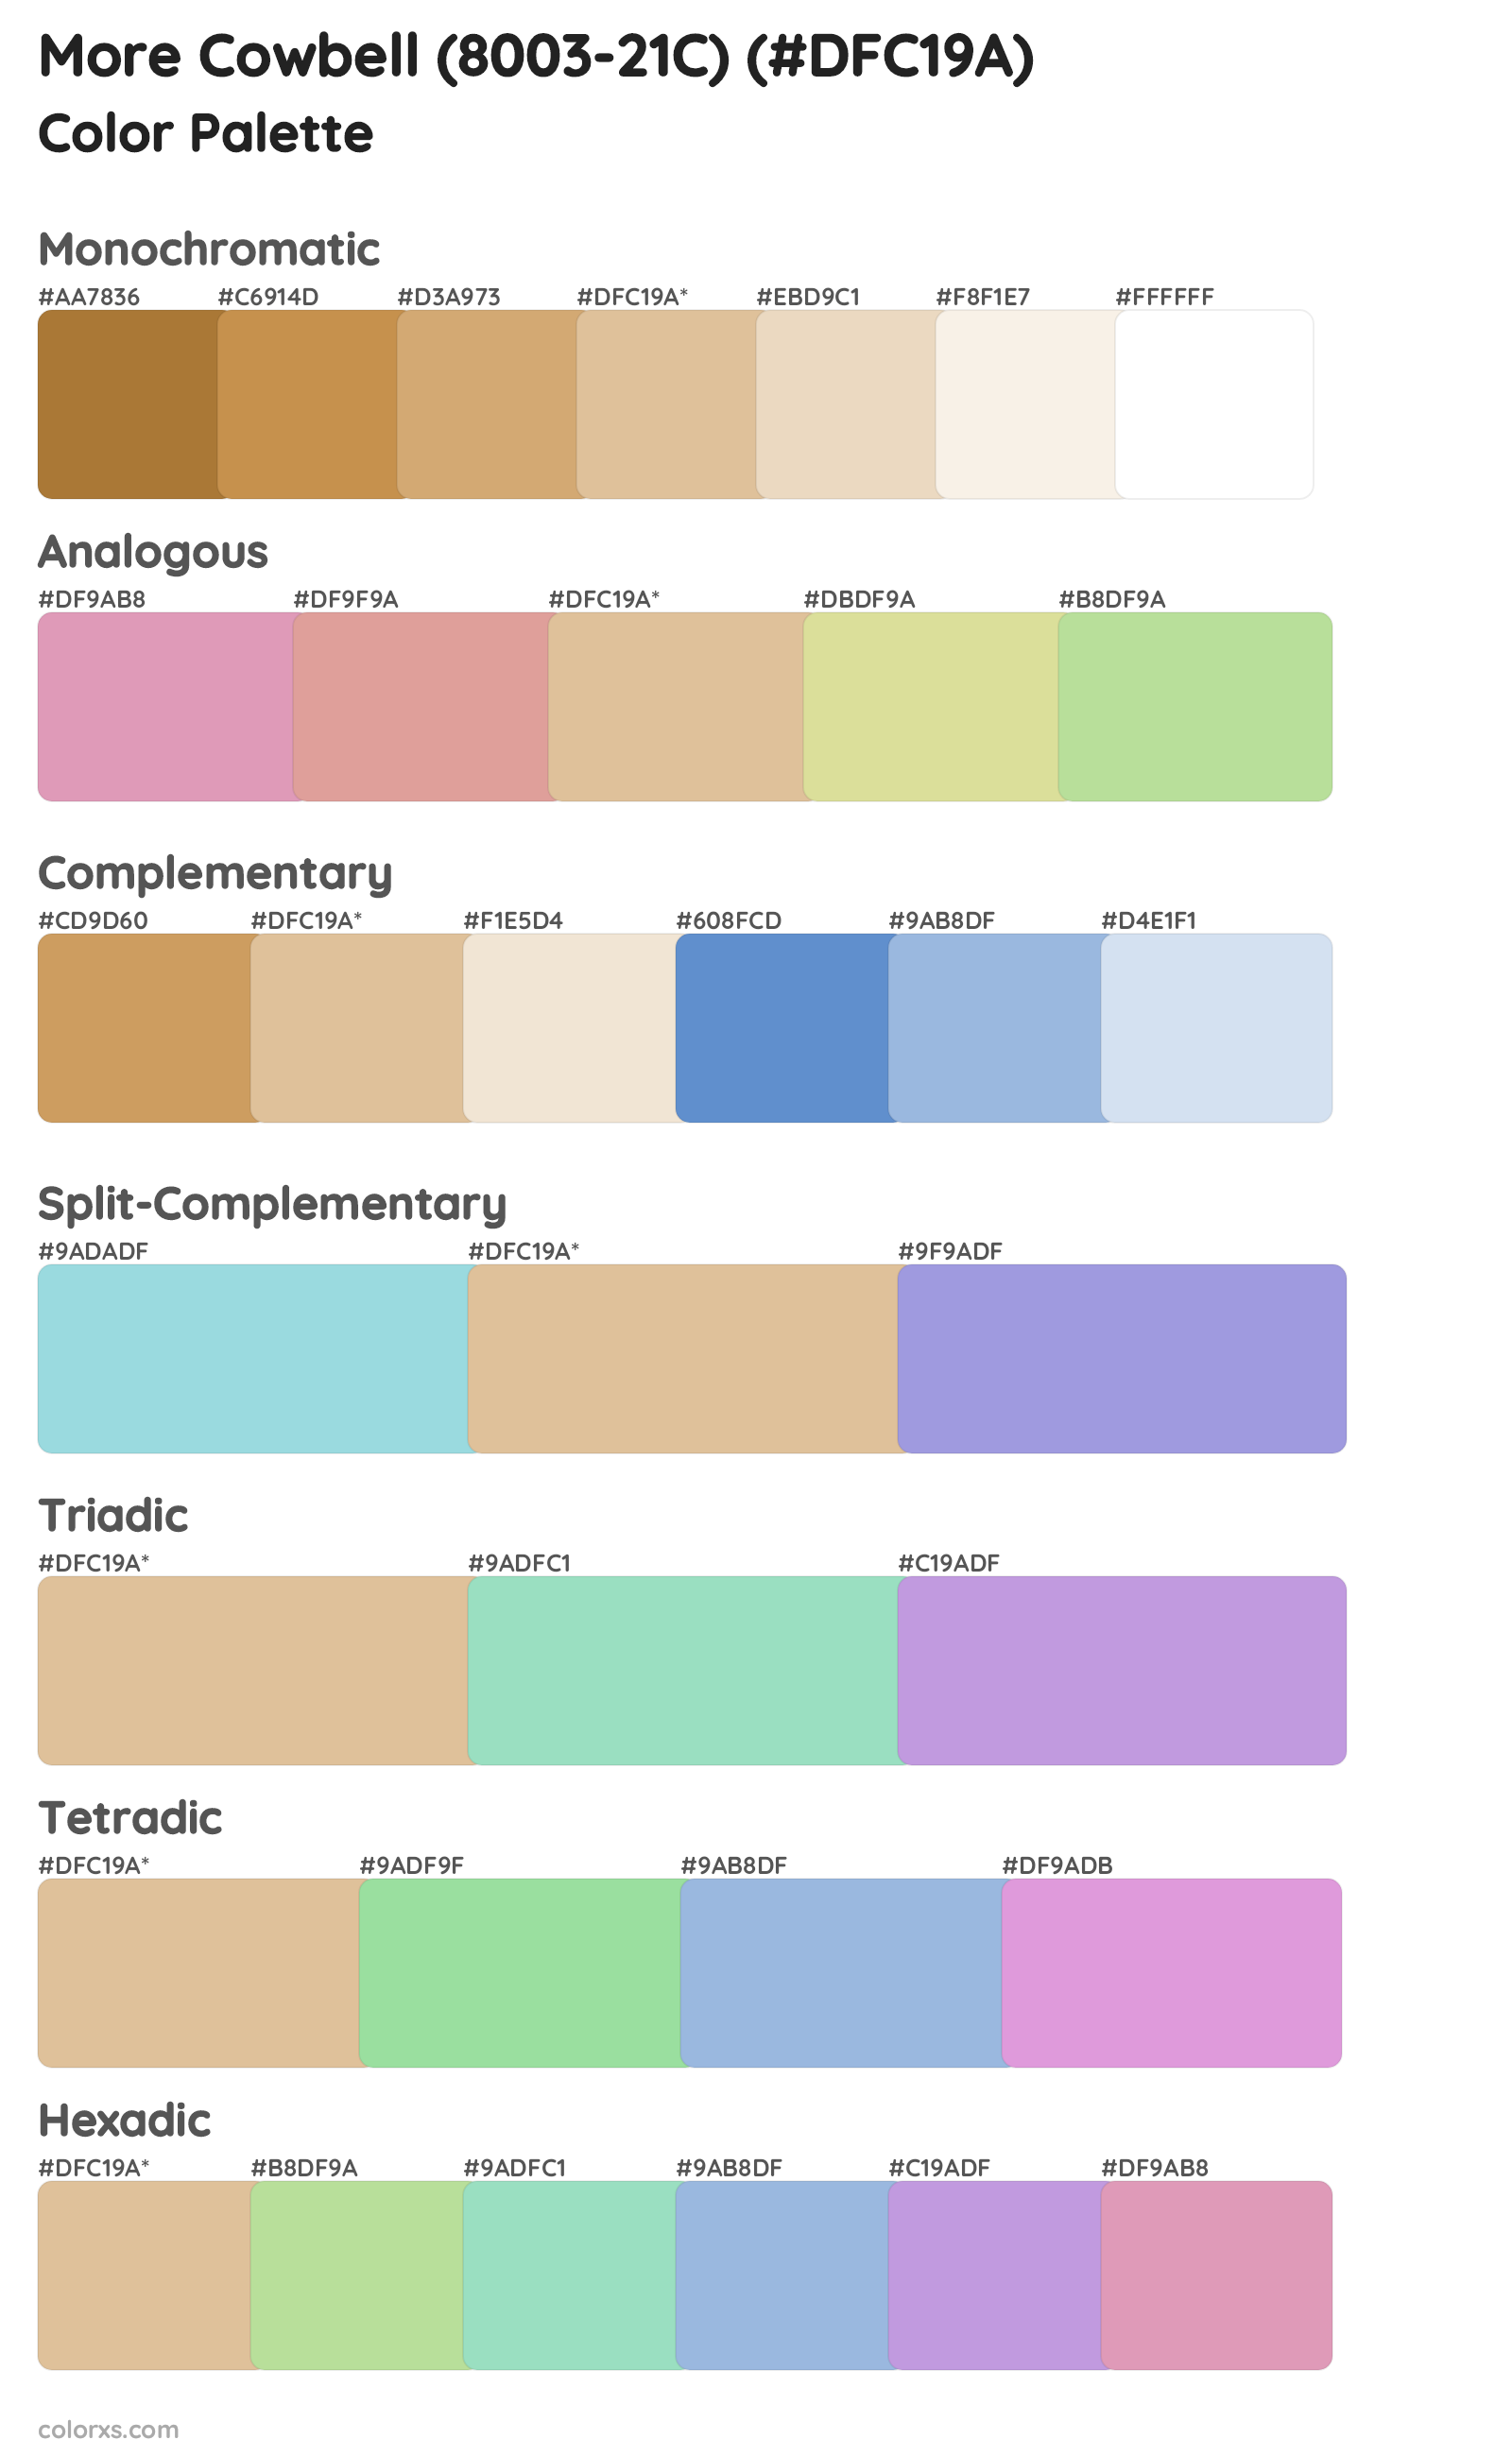 More Cowbell (8003-21C) Color Scheme Palettes